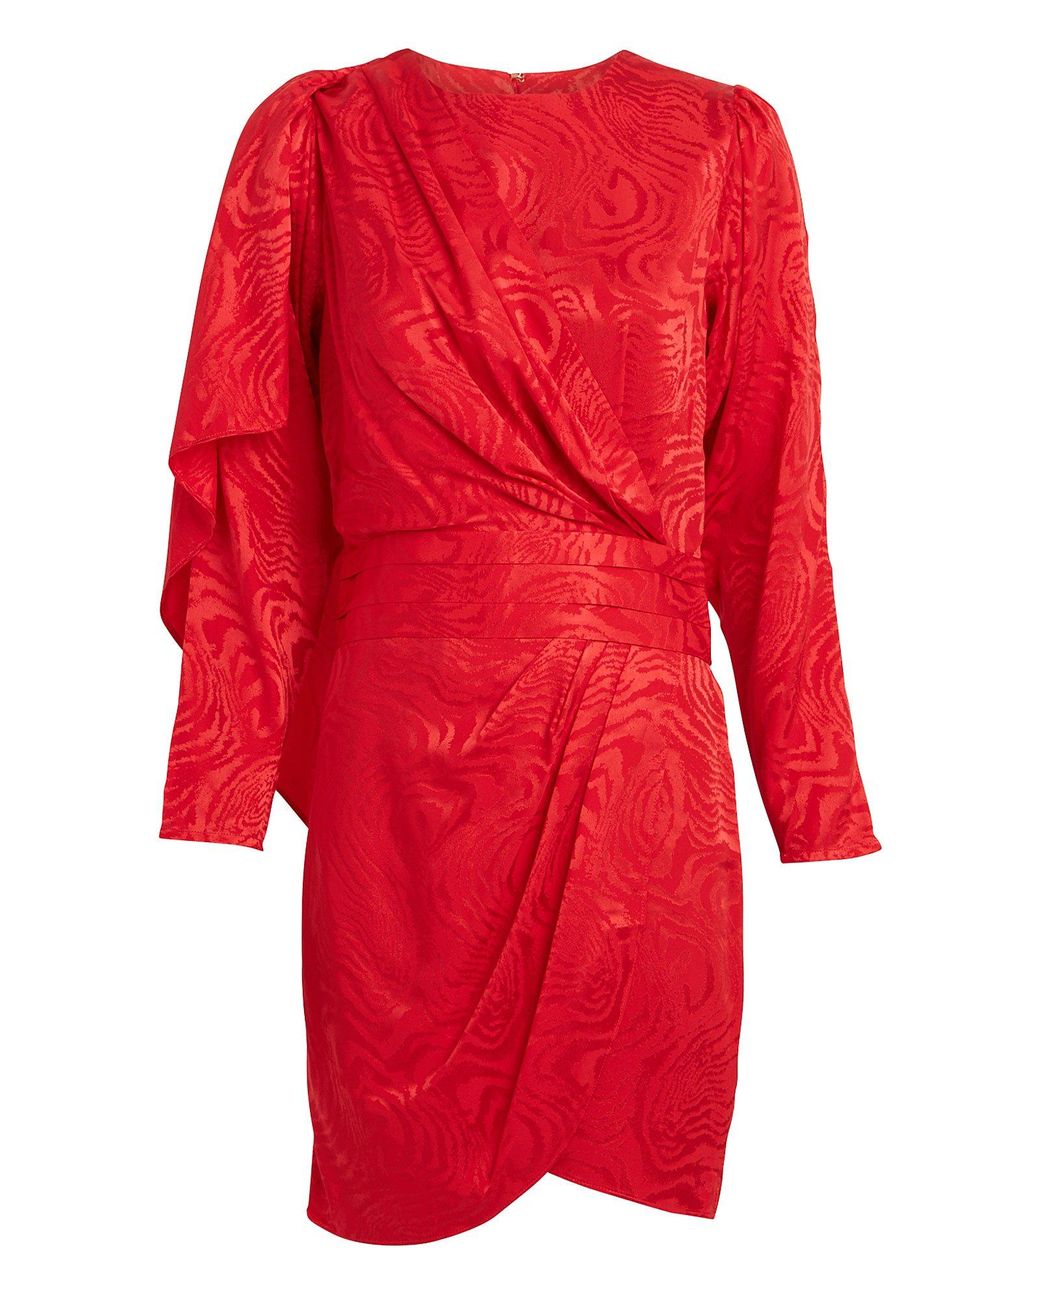 Ronny Kobo Shanaya Draped Moiré Dress in Red | Lyst